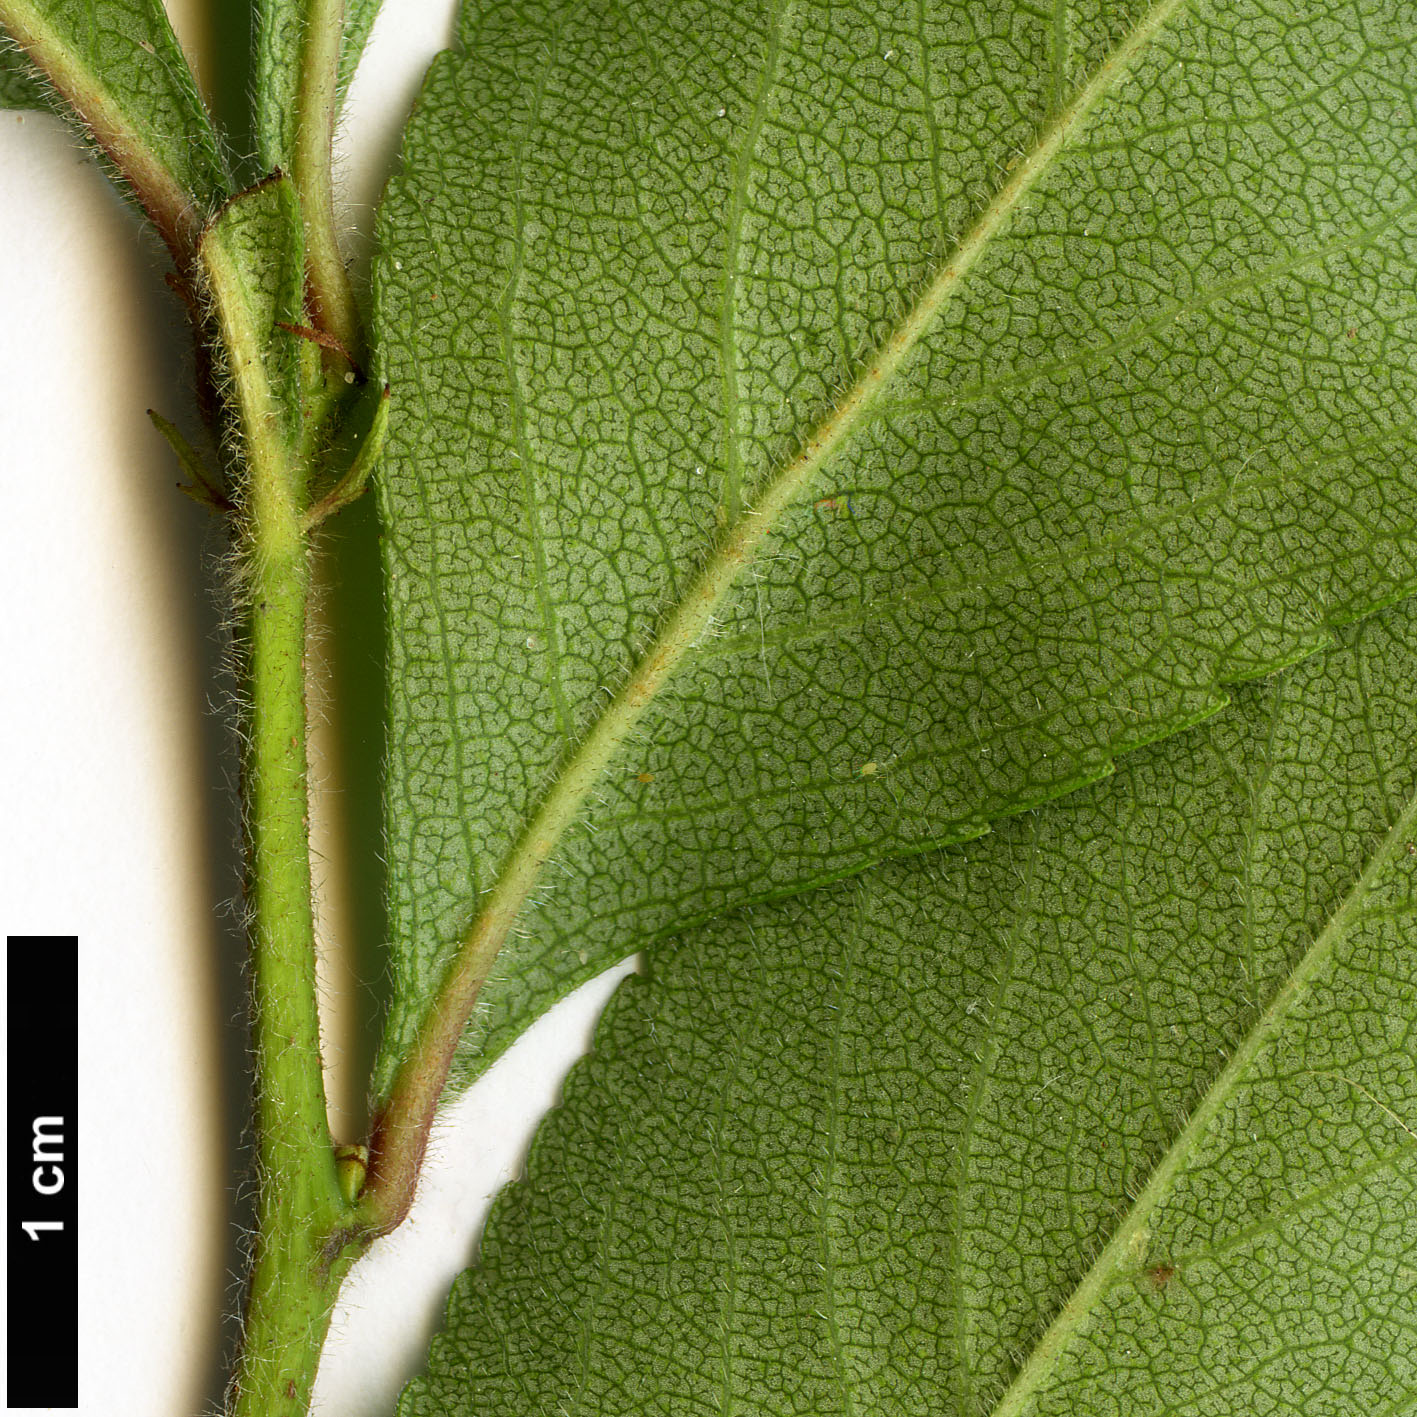 High resolution image: Family: Rosaceae - Genus: Crataegus - Taxon: berberifolia